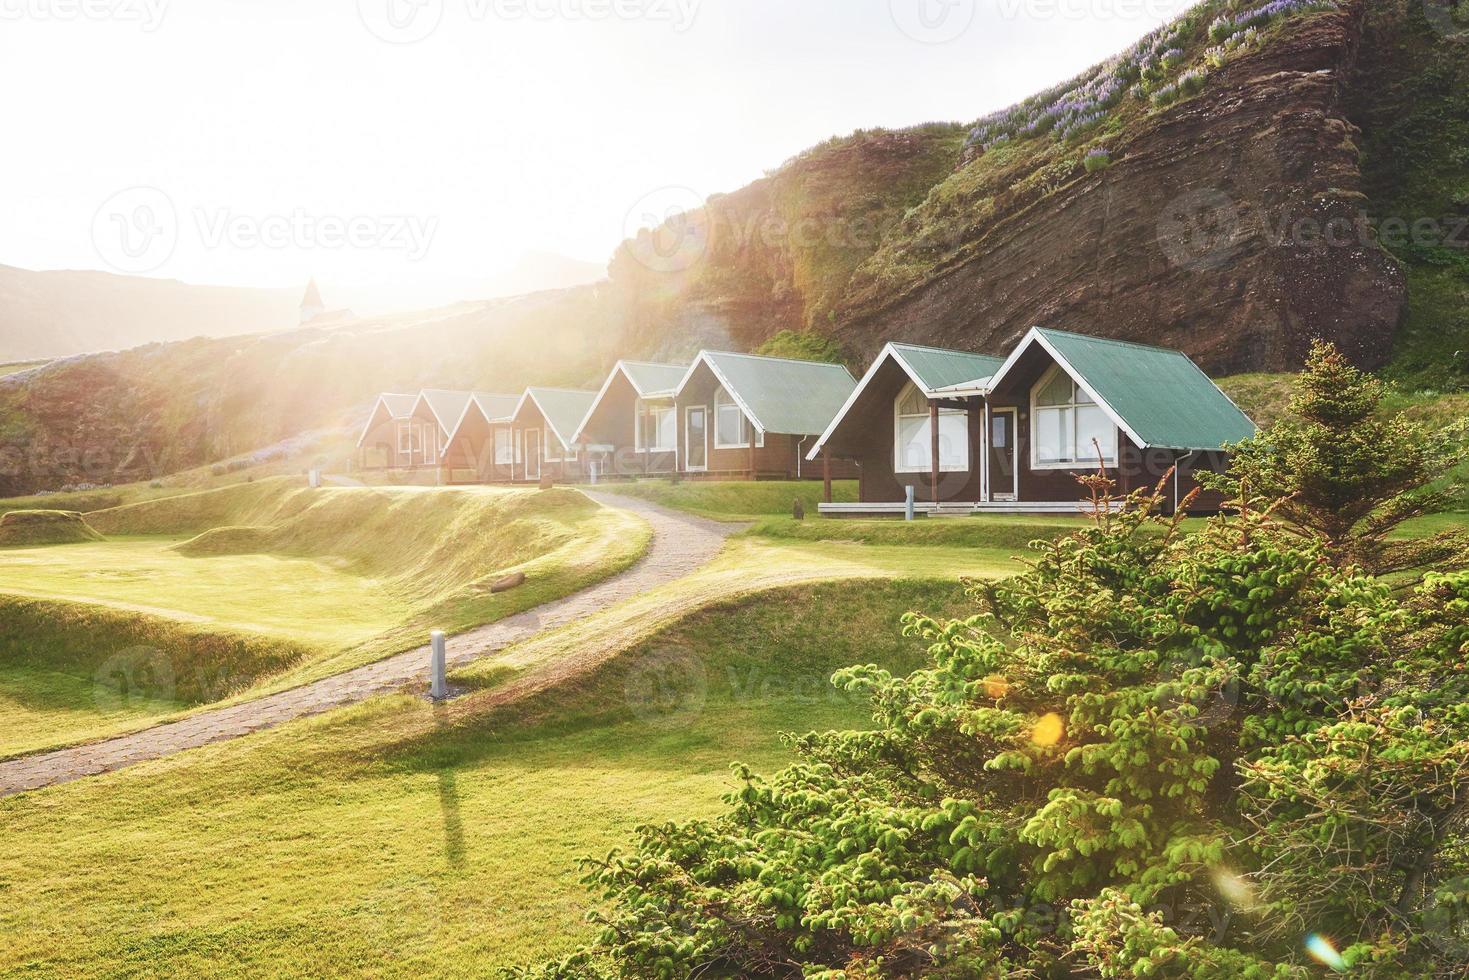 traditionelle isländische häuser mit grasdach im volksmuseum skogar, island foto